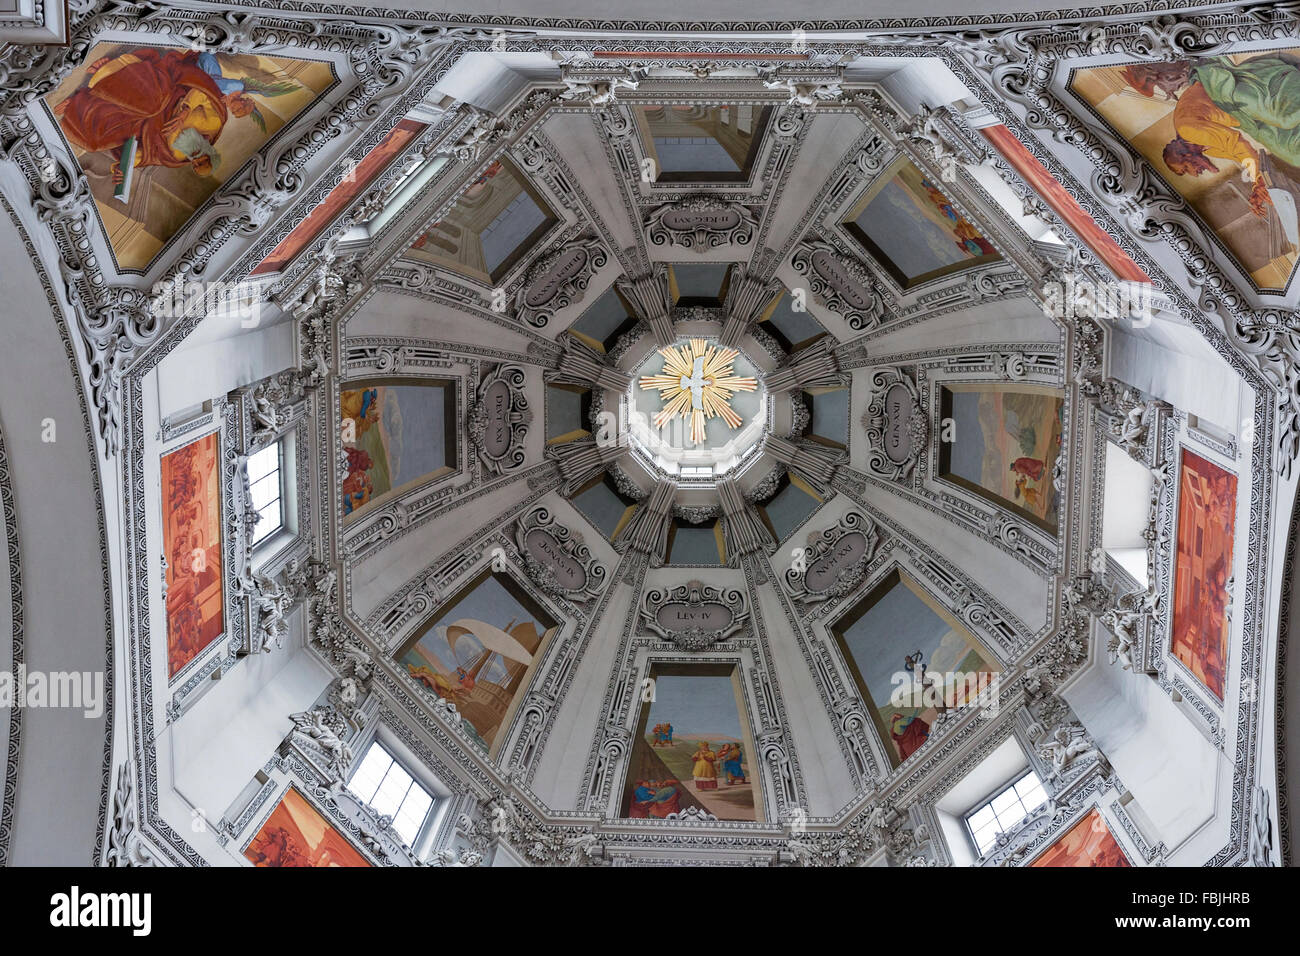 Salzburger Dom Dom Innenraum gebaut von Santino Solari, Schweizer Architekt und Bildhauer. Salzburg, Österreich. Stockfoto